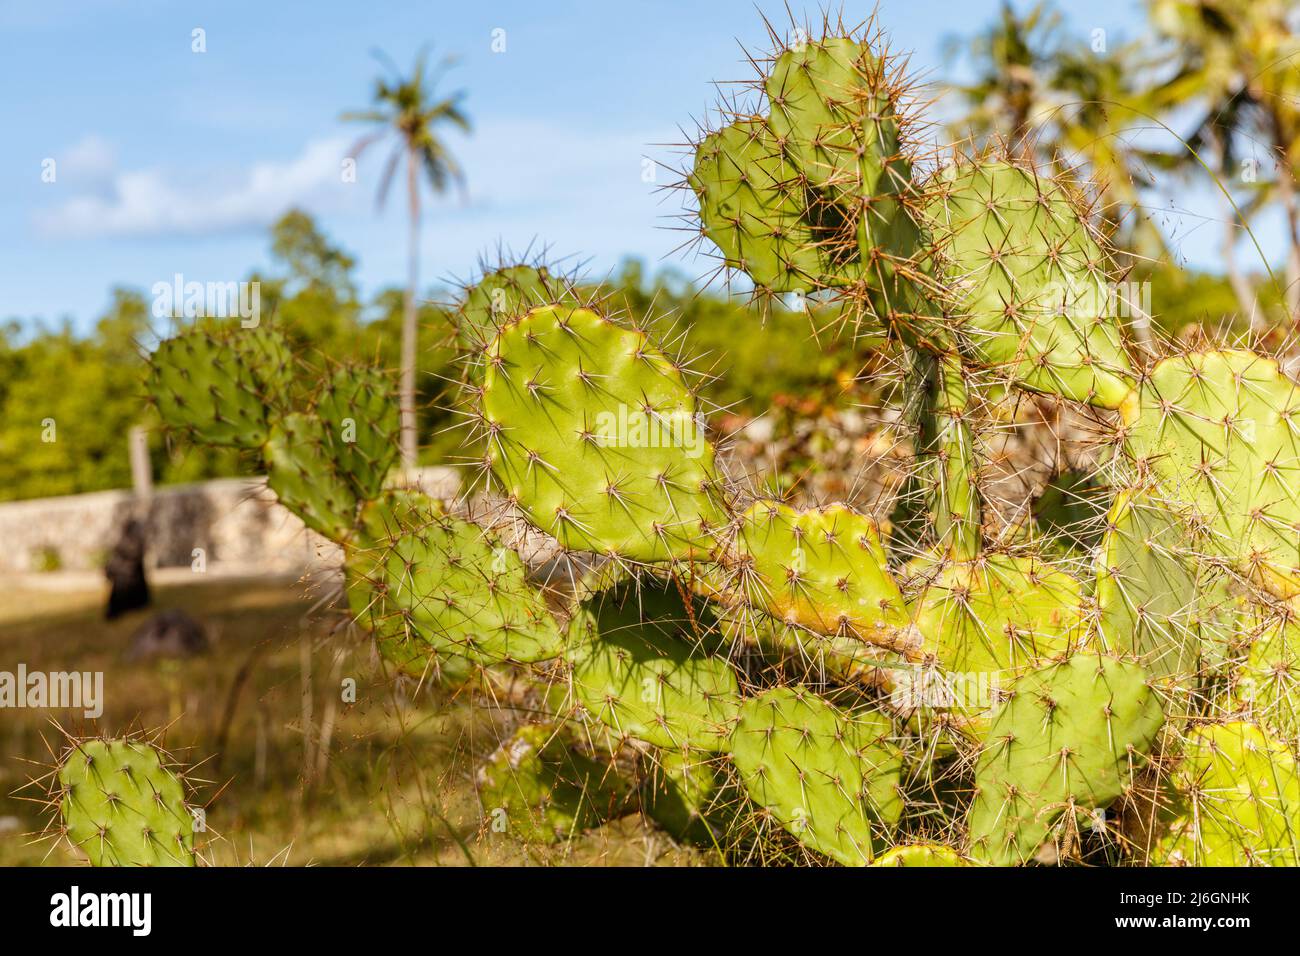 Opuntia (Prickly Pear, Pear cactus), genre de plantes à fleurs de la famille des Cactaceae. Rote, Indonésie. Banque D'Images